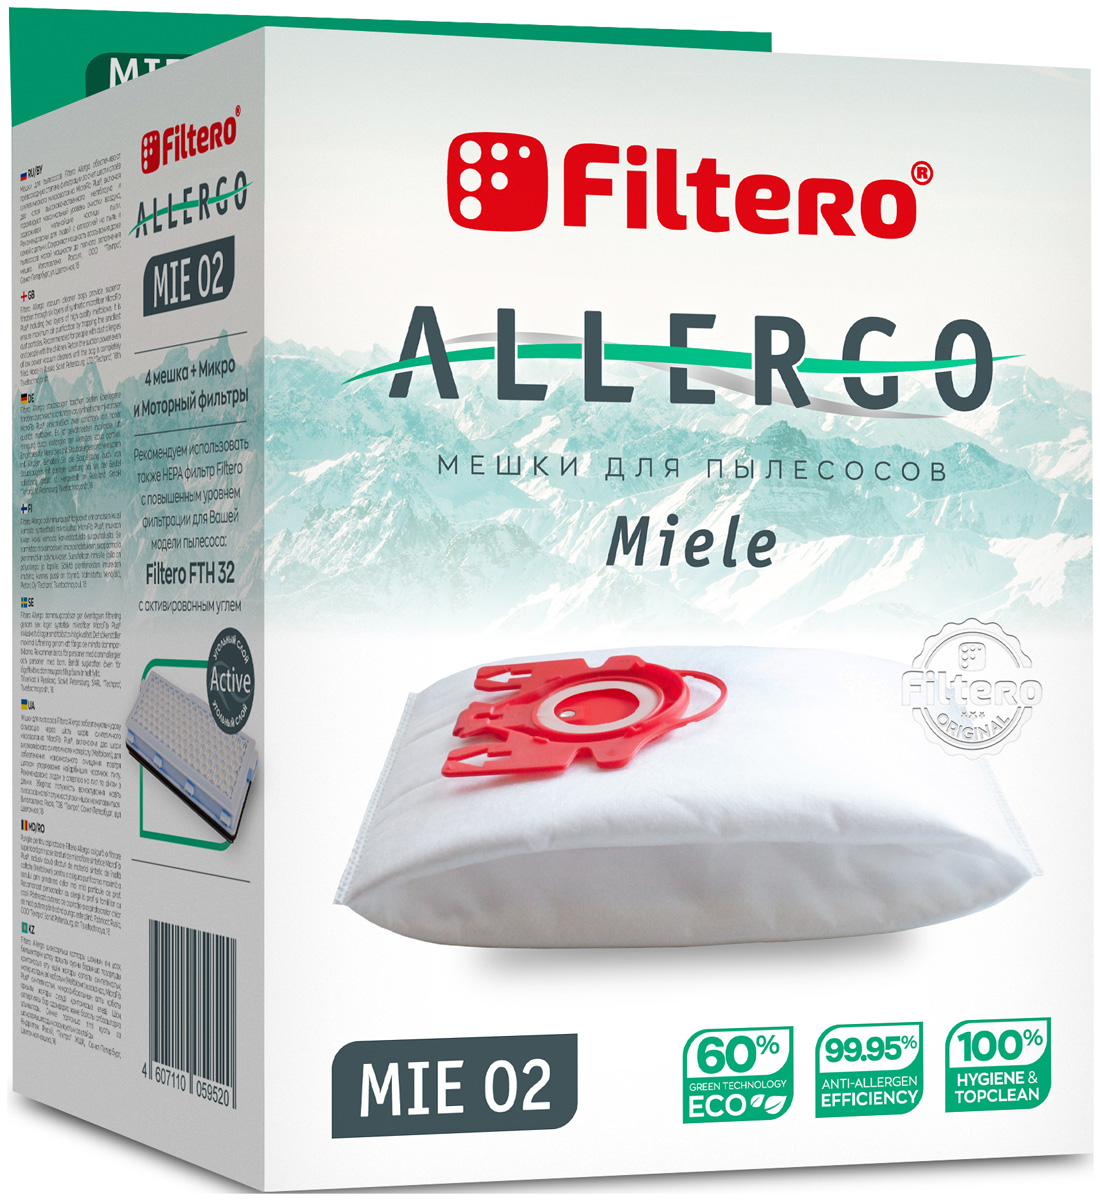 Пылесборники Filtero MIE 02 Allergo 4 шт. + моторный фильтр и микрофильтр пылесборники filtero mie 04 4 allergo для miele